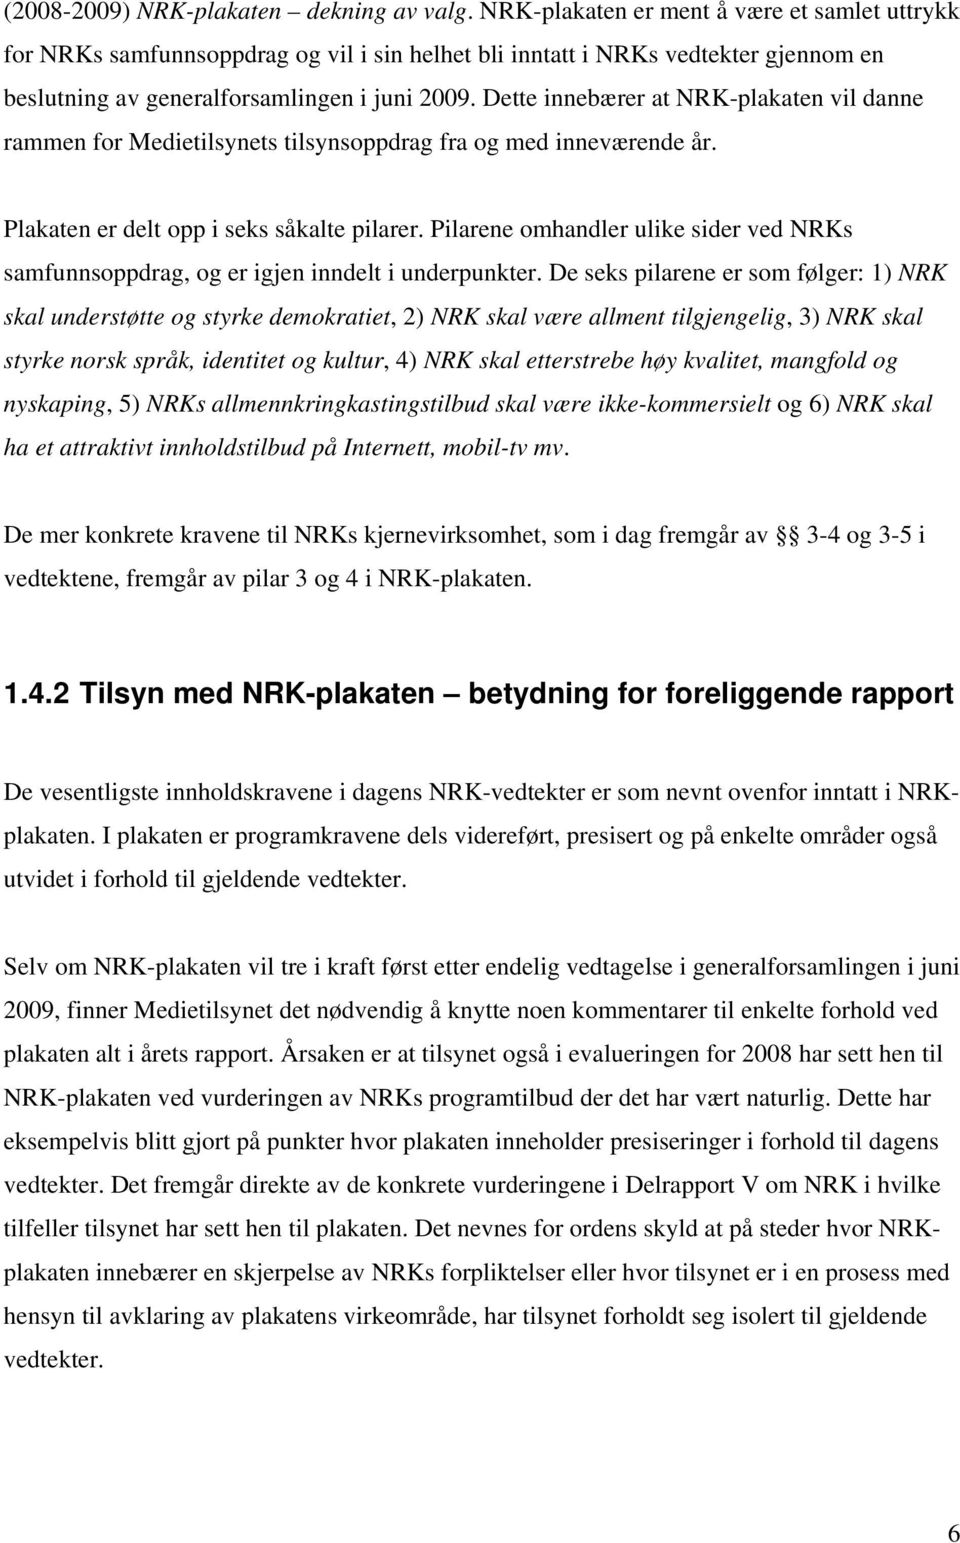 Dette innebærer at NRK-plakaten vil danne rammen for Medietilsynets tilsynsoppdrag fra og med inneværende år. Plakaten er delt opp i seks såkalte pilarer.